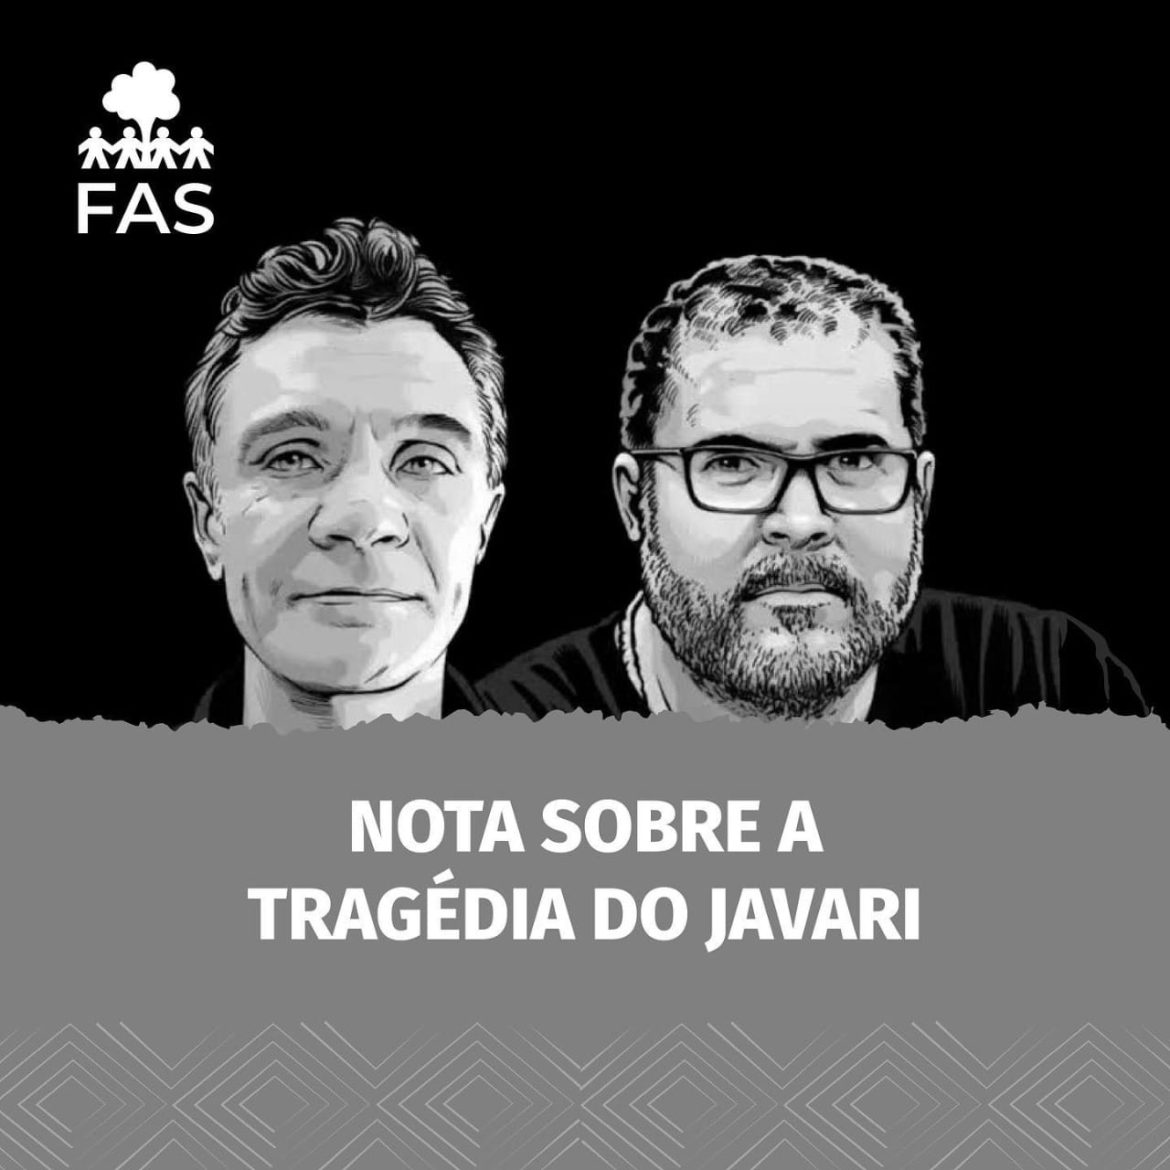 Imagem de Bruno Araújo Pereira e do jornalista britânico Dom Phillips, assassinados brutalmente, no Vale do Javari.